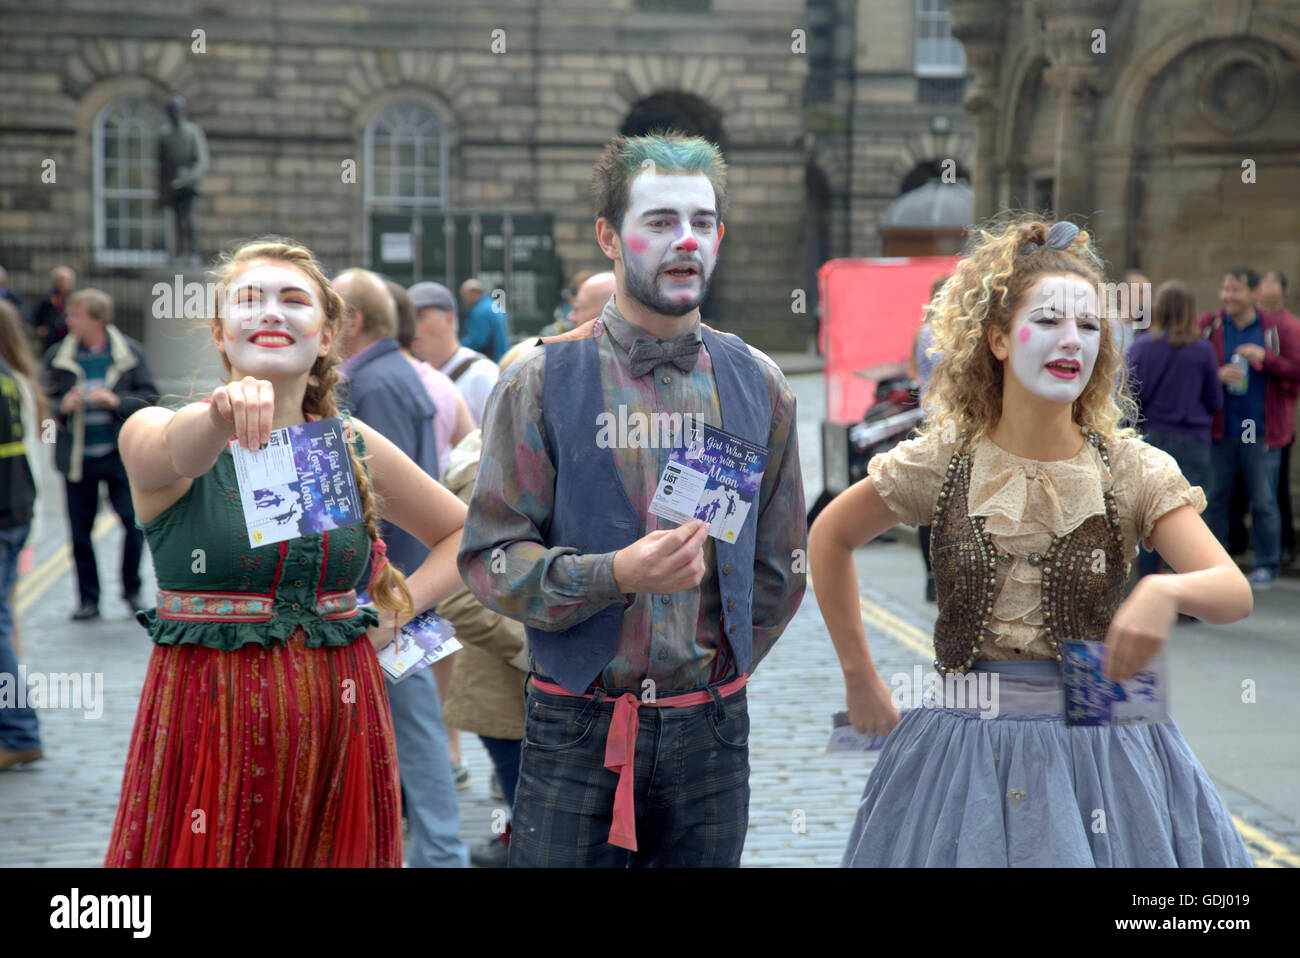 Esecutori di scene dal Edinburgh Festival Fringe vergine sponsorizzato street festival di Edimburgo, Scozia " la ragazza che si innamorò della luna" Foto Stock